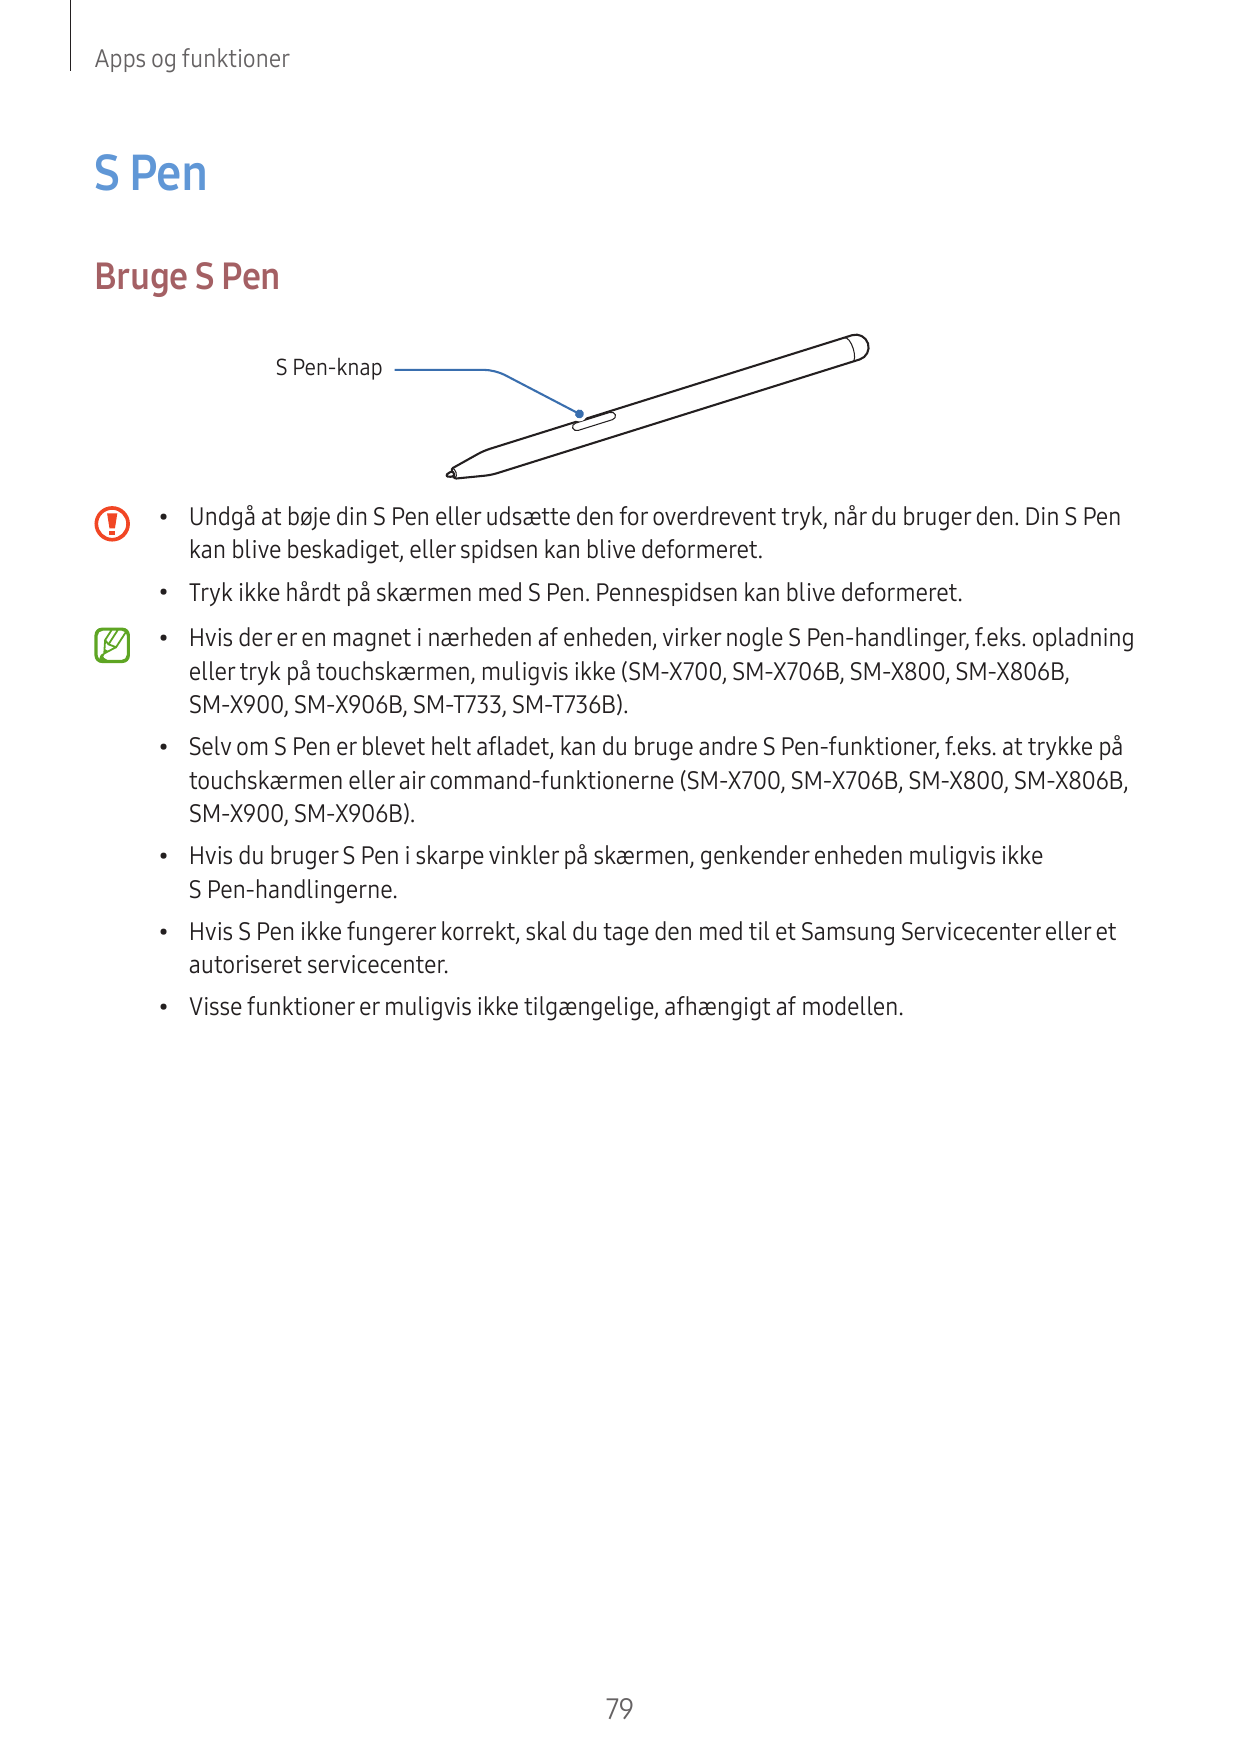 Apps og funktionerS PenBruge S PenS Pen-knap•Undgå at bøje din S Pen eller udsætte den for overdrevent tryk, når du bruger den. 